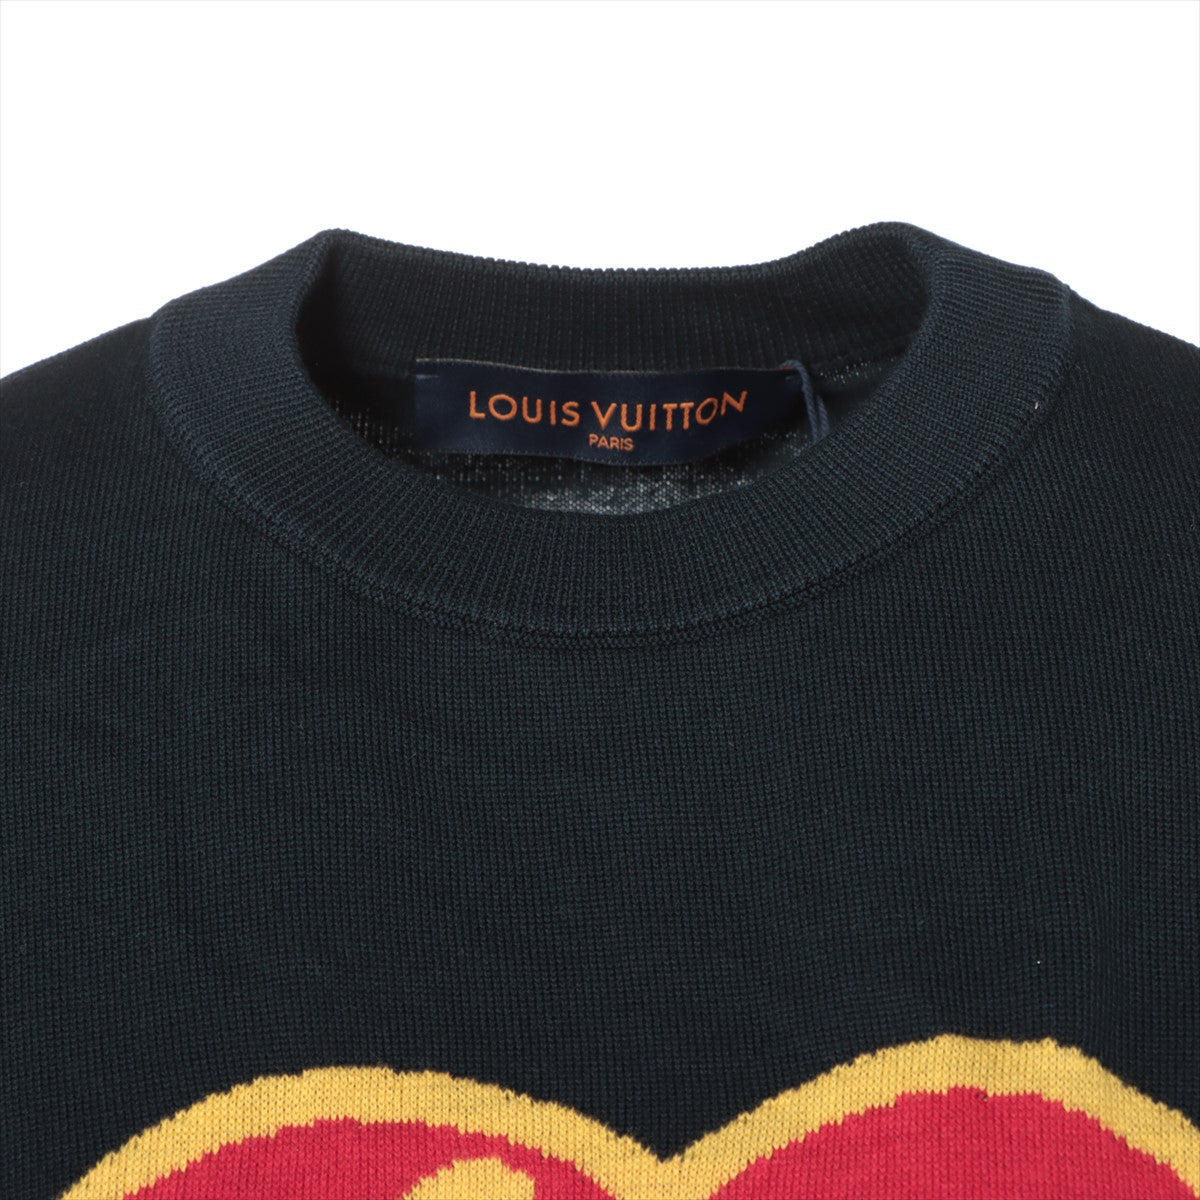 Louis Vuitton x NIGO 22SS Cotton Short Sleeve Knitwear XS Men's Navy blue  heart logo RM221M